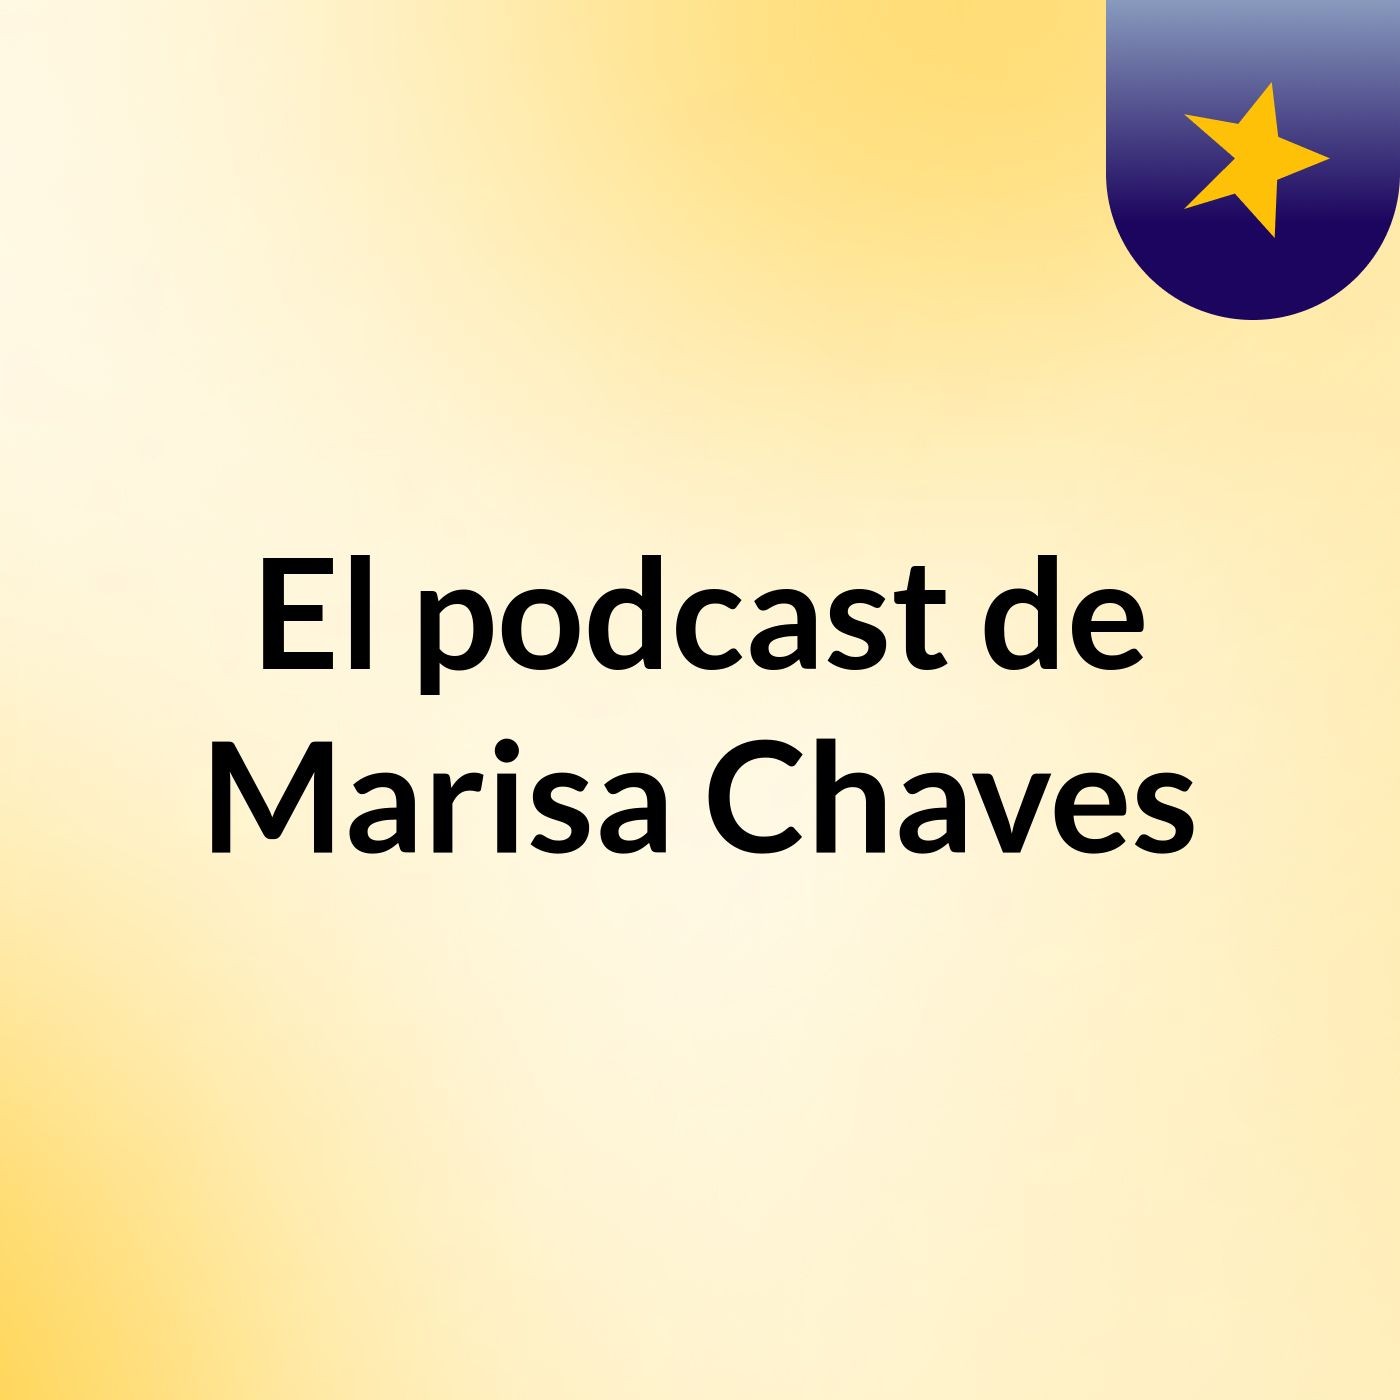 El podcast de Marisa Chaves